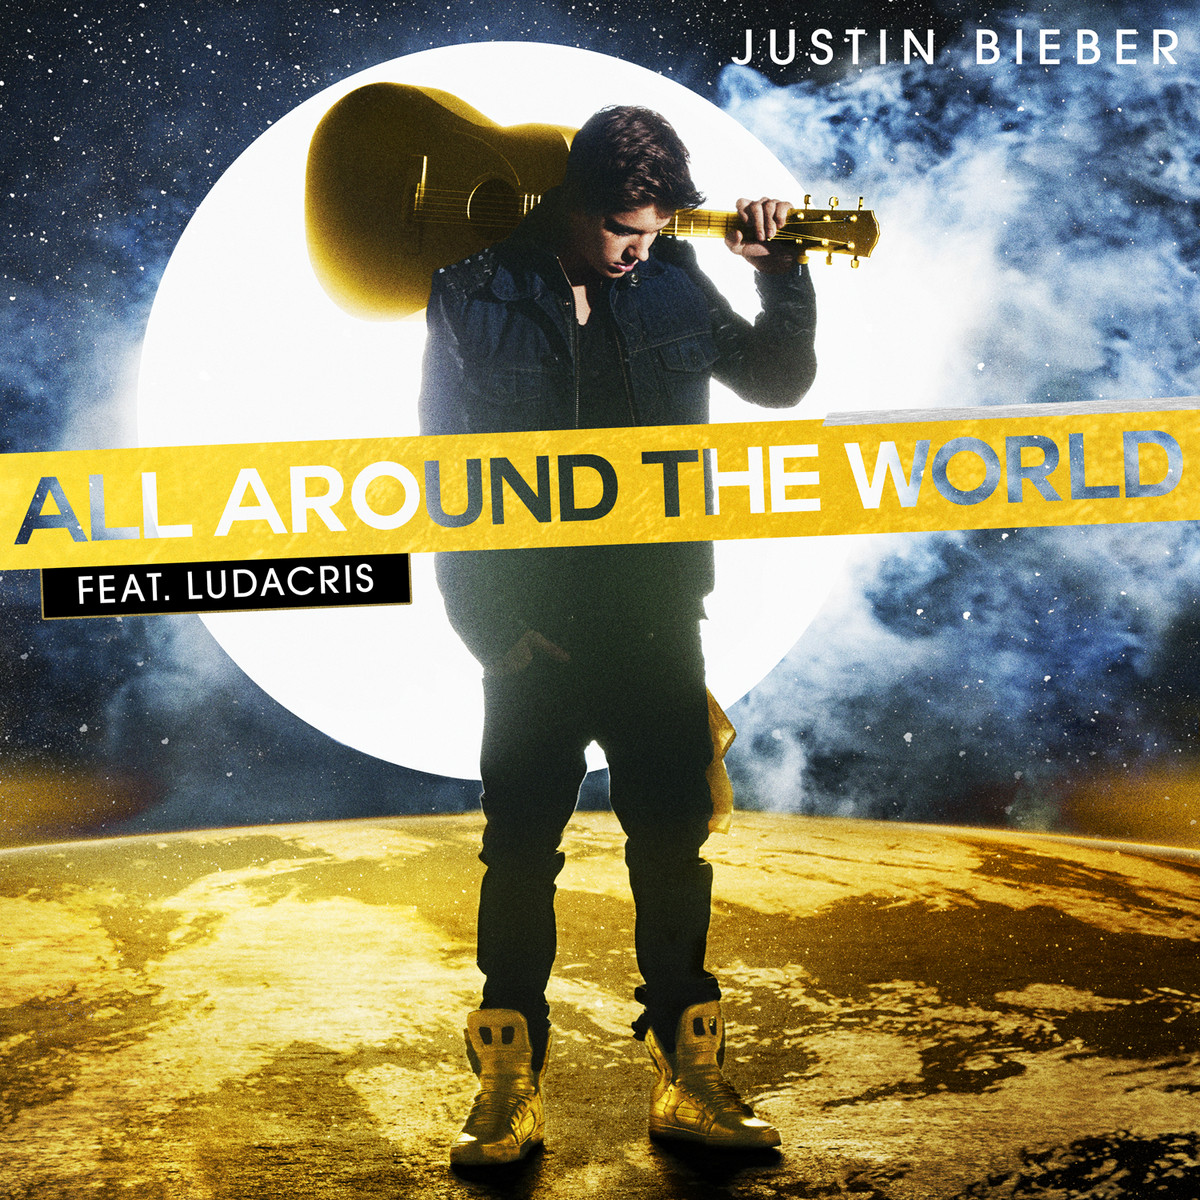 Justin Bieber estrena el videoclip de su nuevo single “All Around The World”